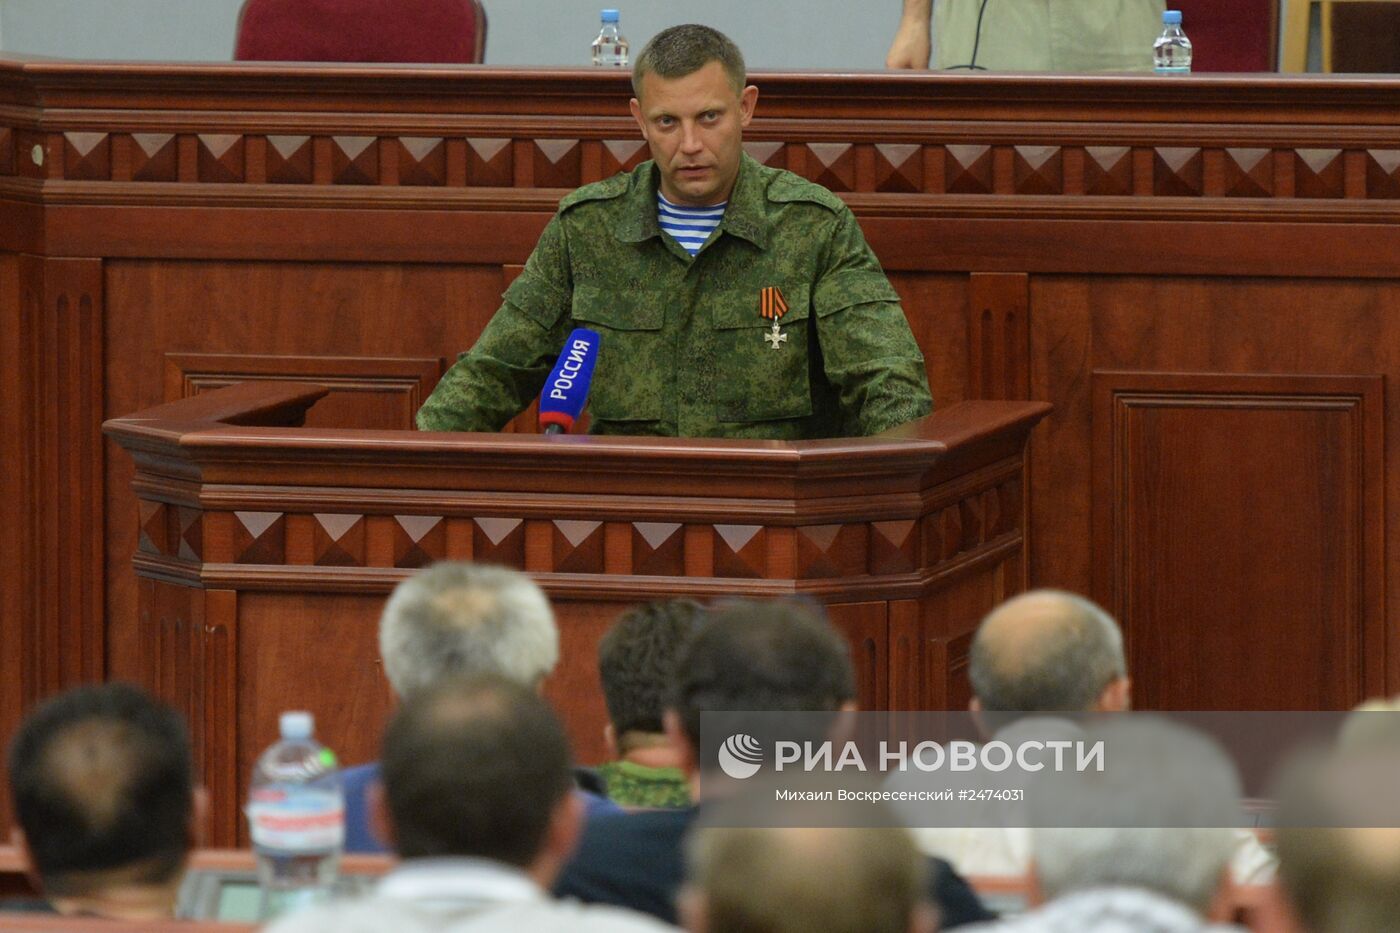 Верховный совет ДНР утвердил Александра Захарченко на пост премьер-министра республики